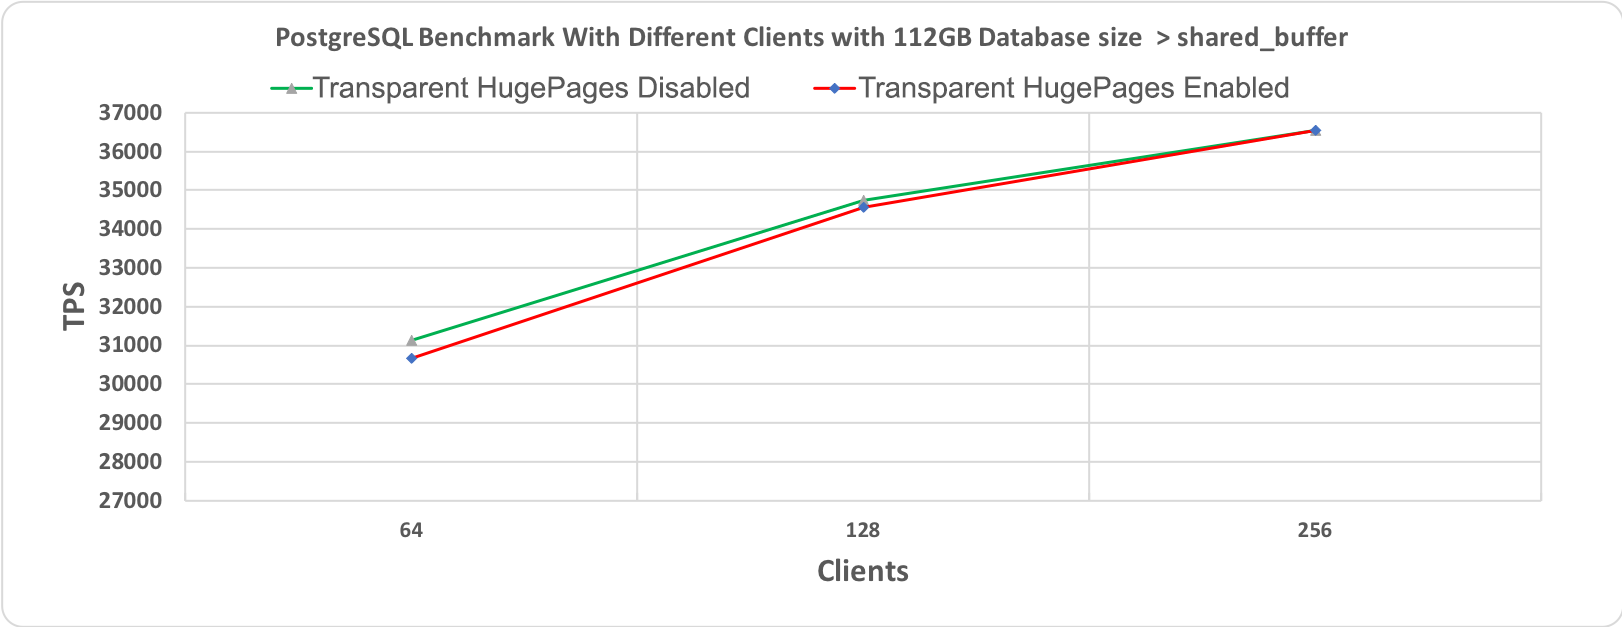 Рис. 2.2 Тест производительности PostgreSQL, длительность 60 минут при размере базы данных (112 гигабайт) > shared_buffer (64 гигабайт)